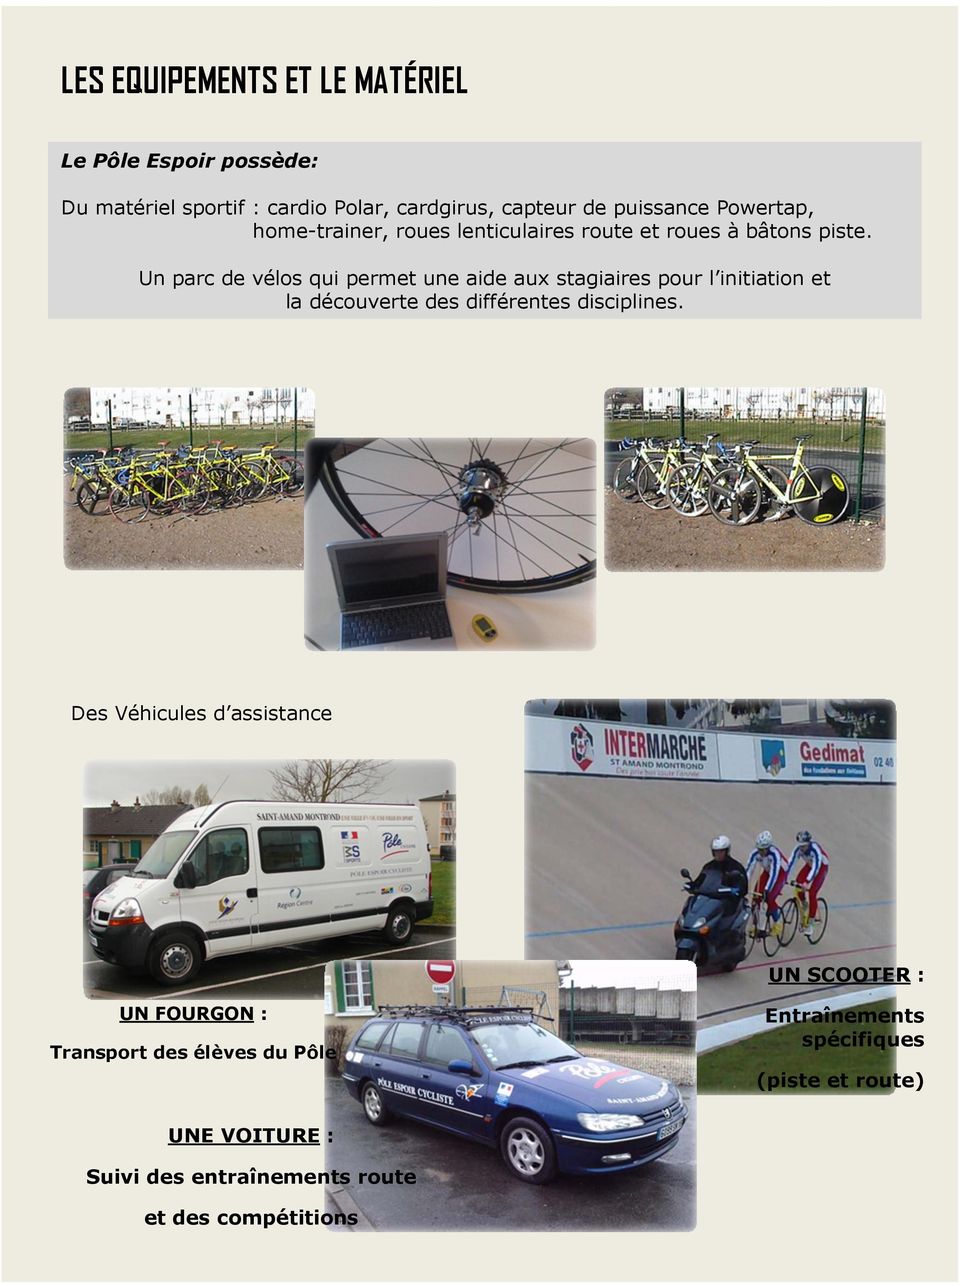 Un parc de vélos qui permet une aide aux stagiaires pour l initiation et la découverte des différentes disciplines.